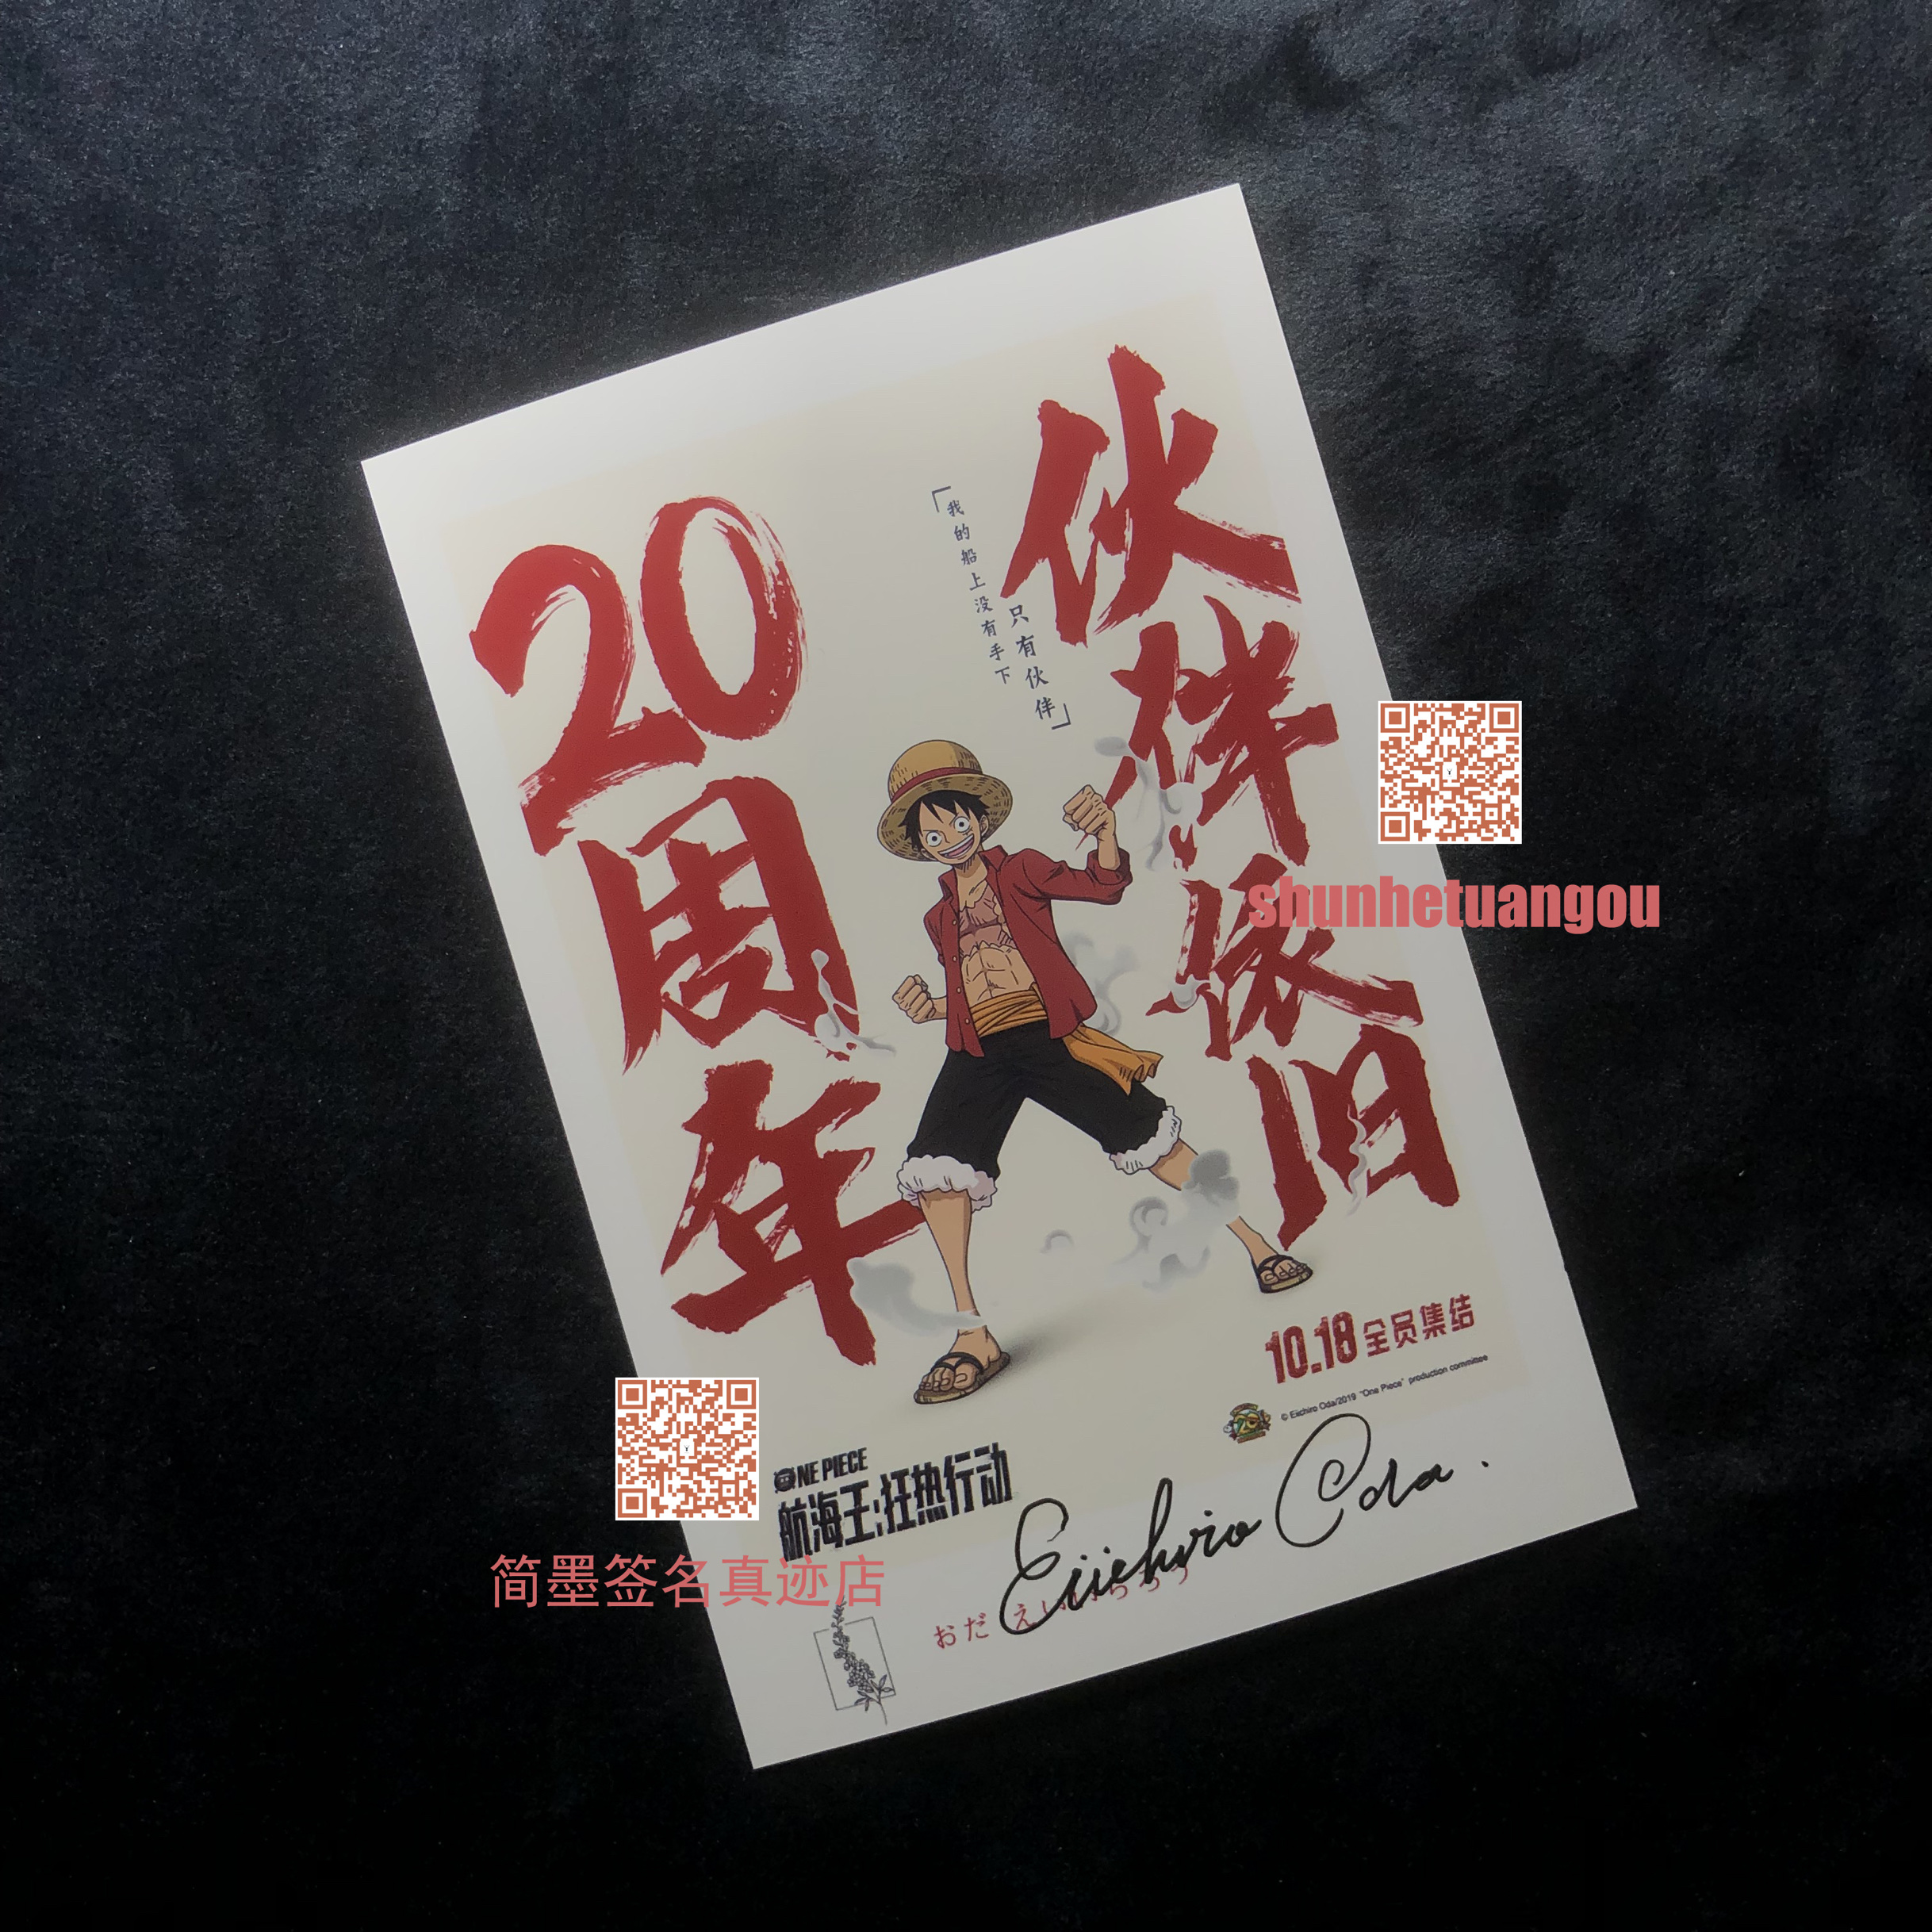 尾田荣一郎Eiichiro Oda亲笔签名照片 防盗图设置 实物无水印